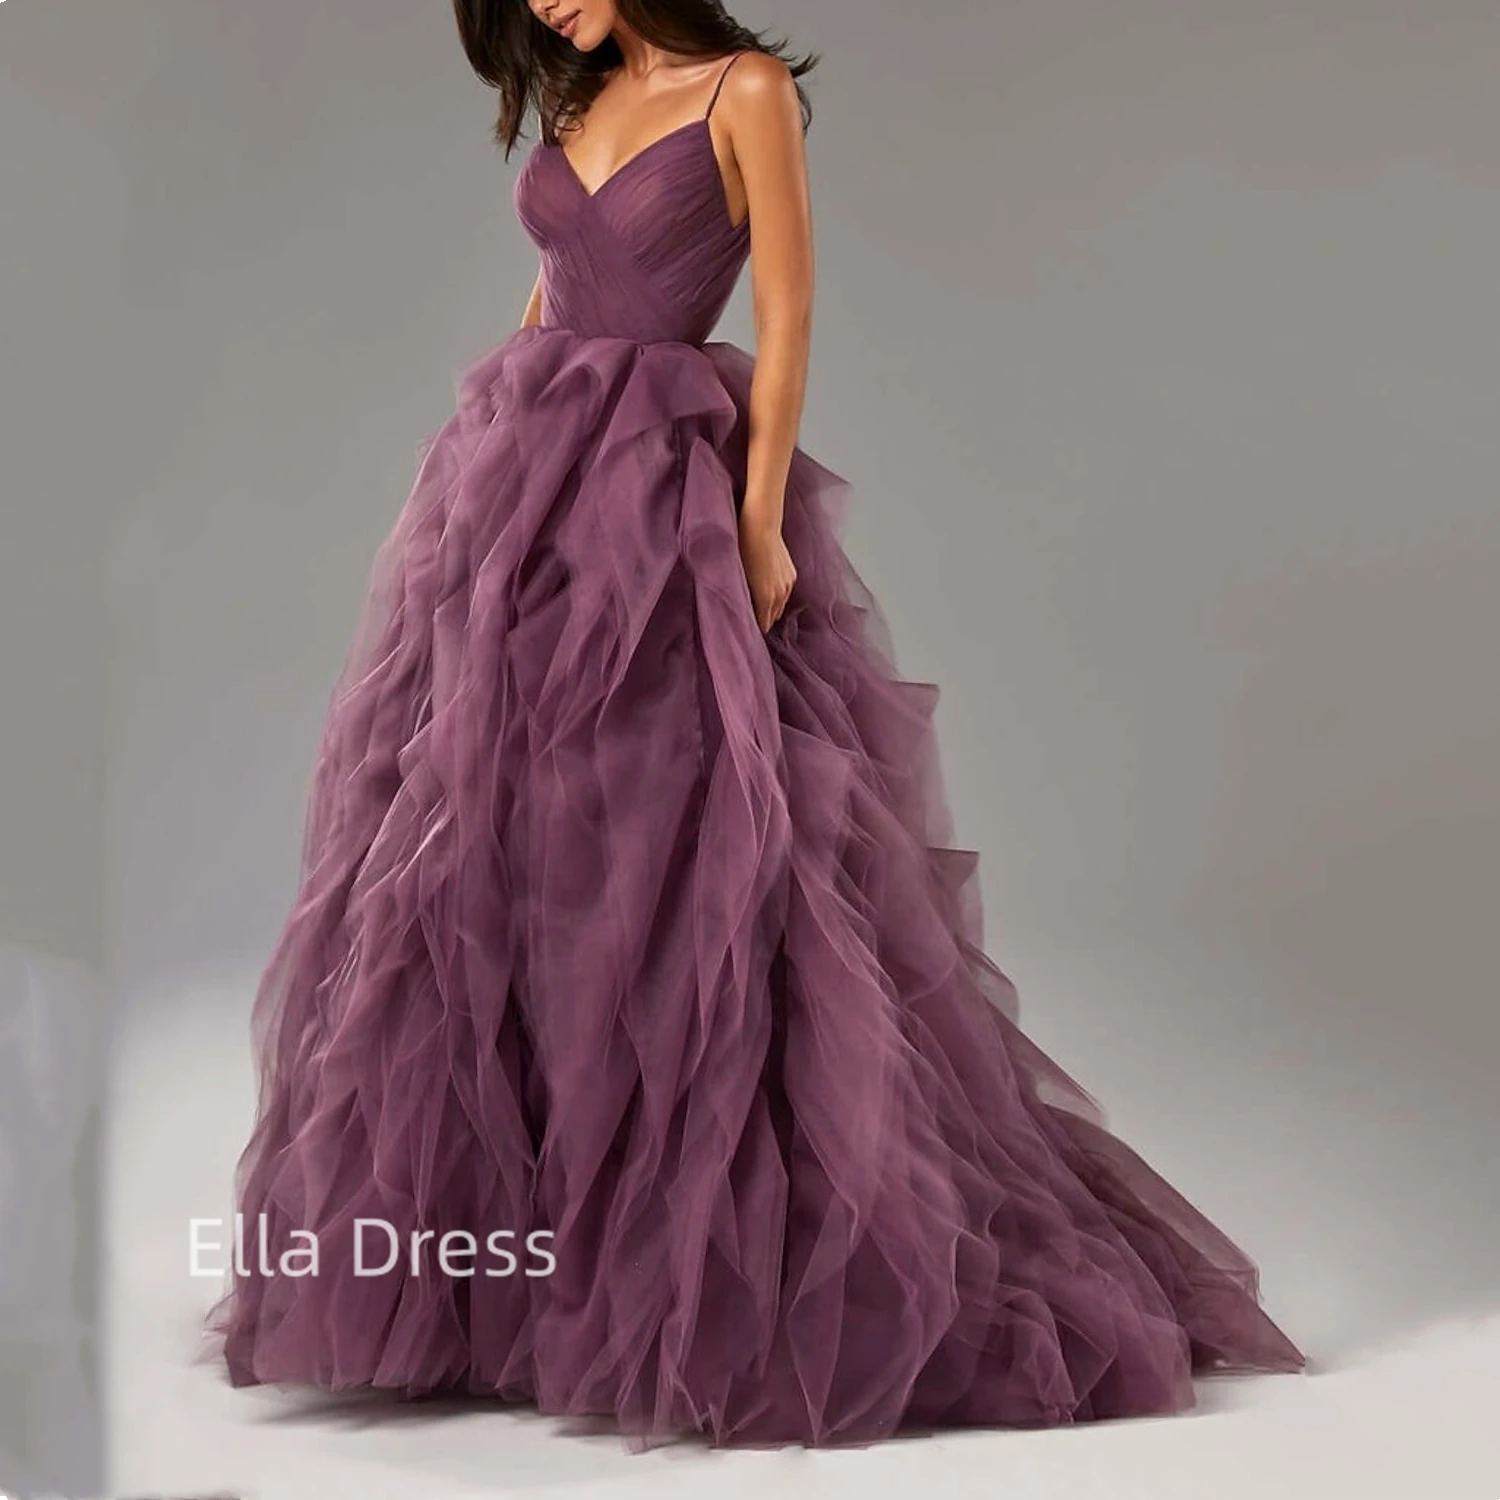 

Женское платье принцессы Ella, бальное платье из органзы на тонких бретельках, элегантное арабское платье для выпускного вечера